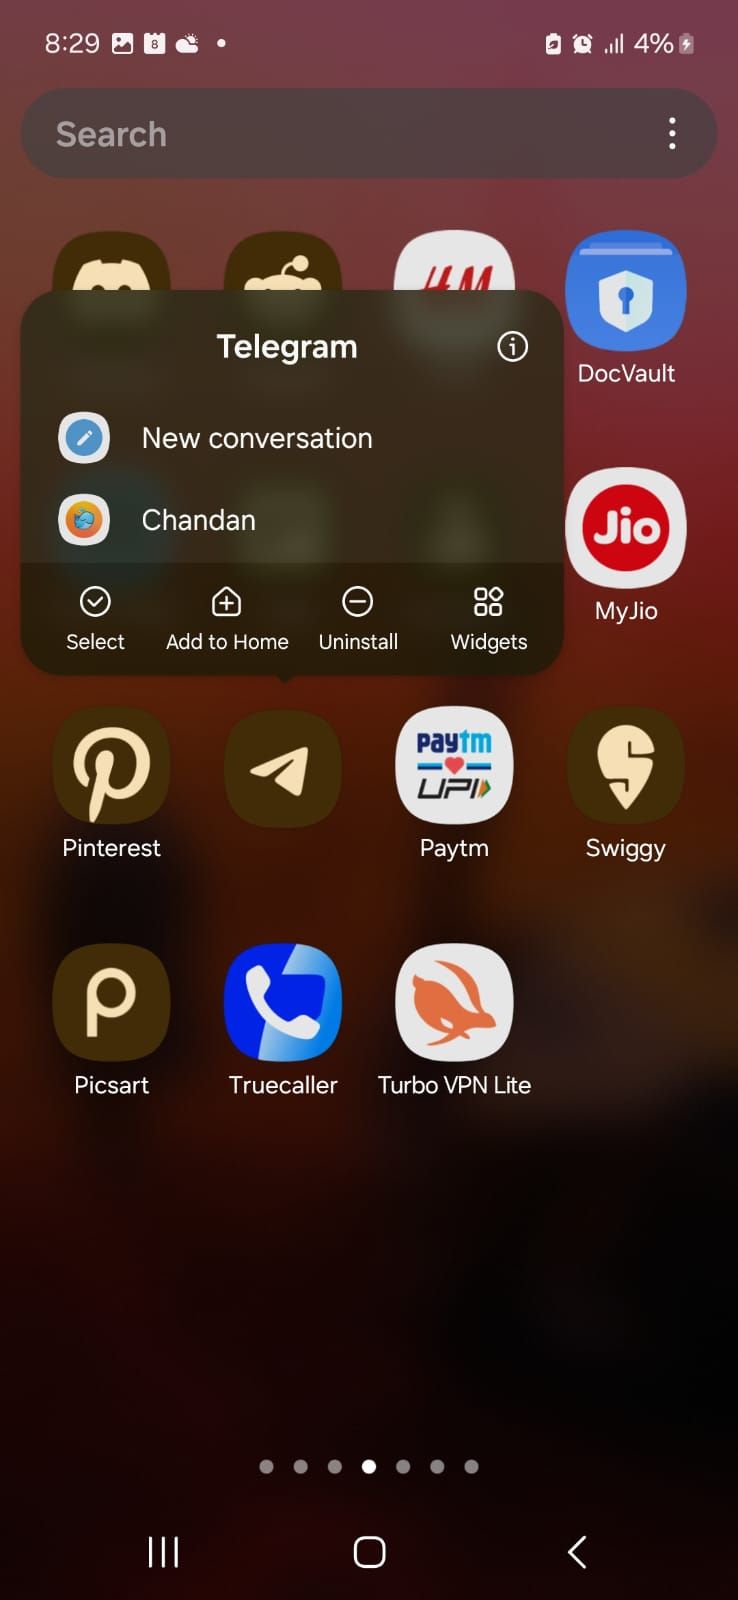 Captura de tela mostrando o aplicativo Telegram na galeria de aplicativos Samsung